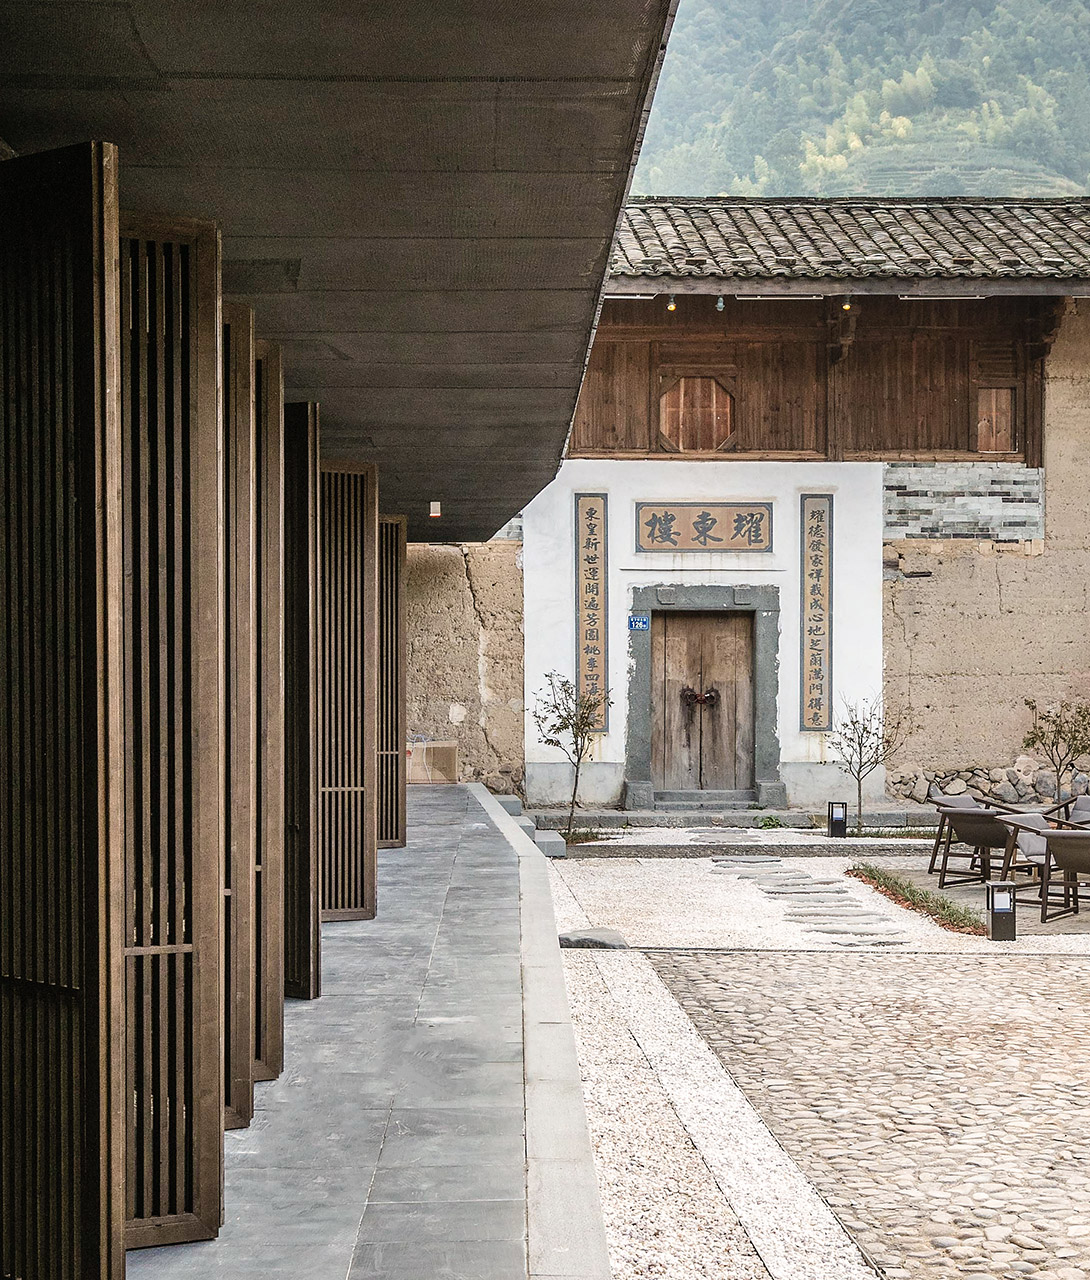 Tsingpu Tulou Retreat Courtyard in Zhangzhou